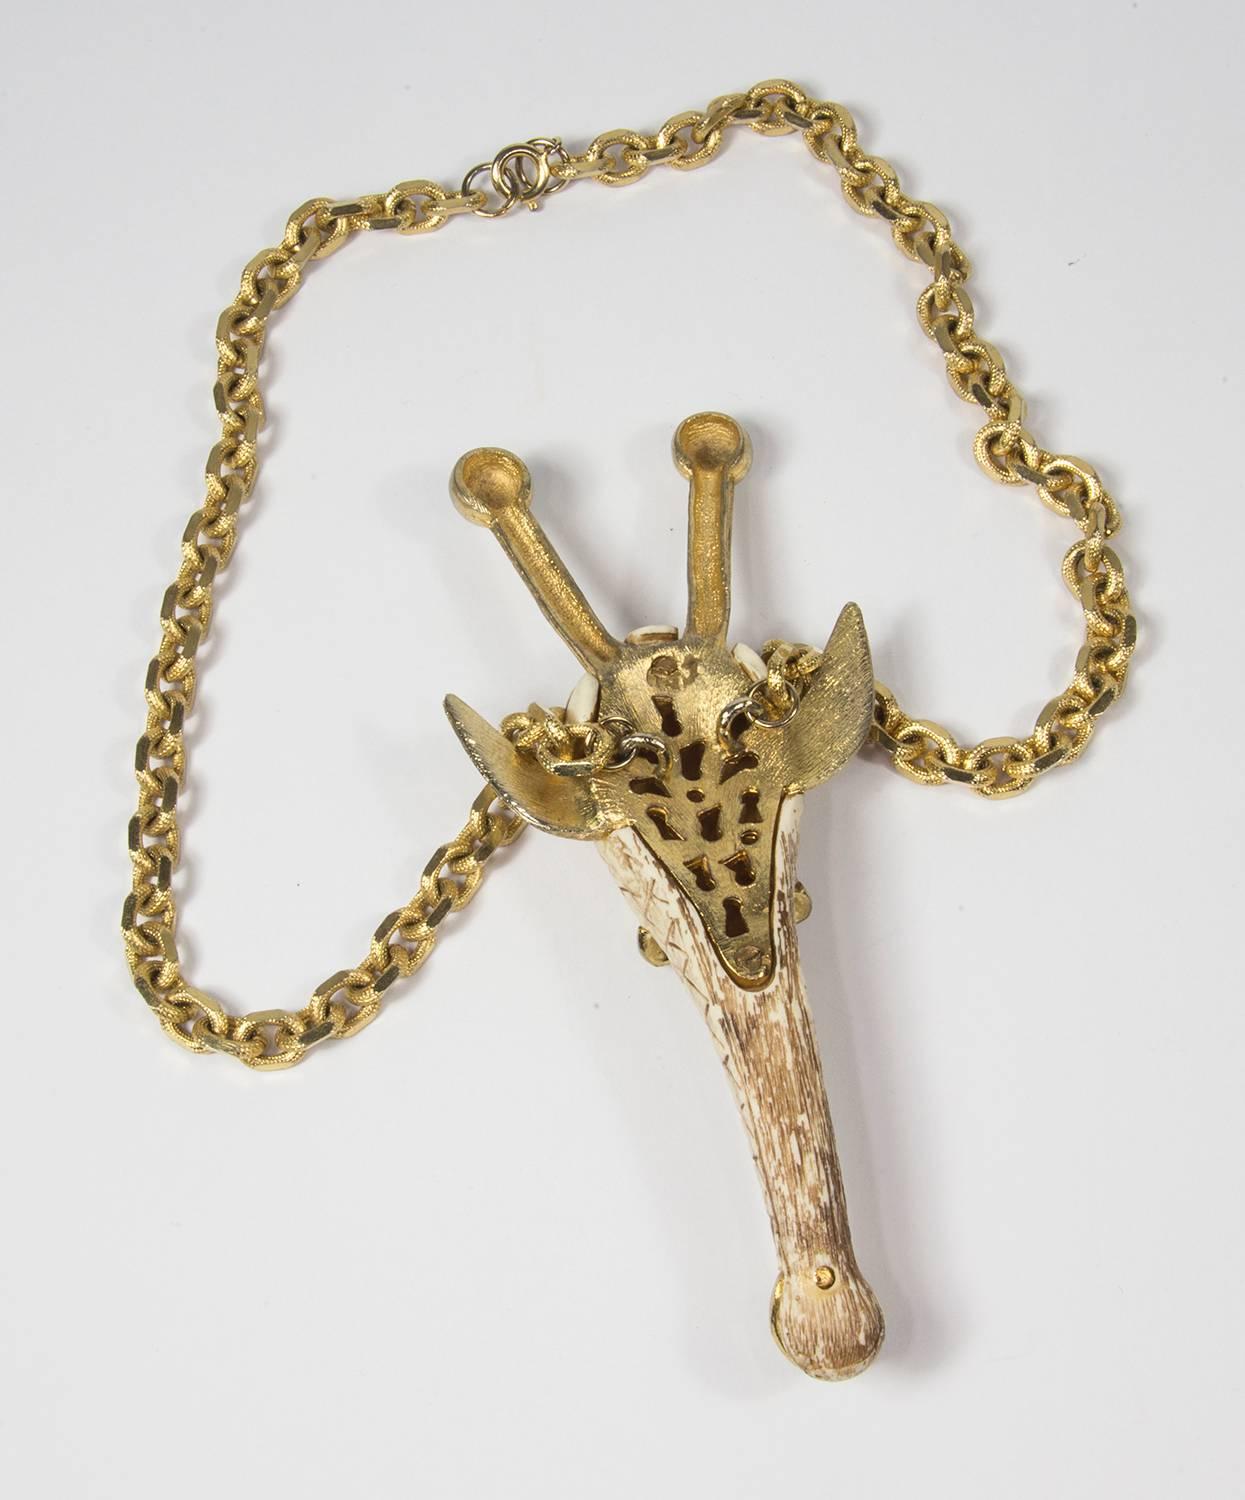 Modernist Razza Figural Animal Pendant Necklace in the Zodiac sign of the Giraffe C1970s